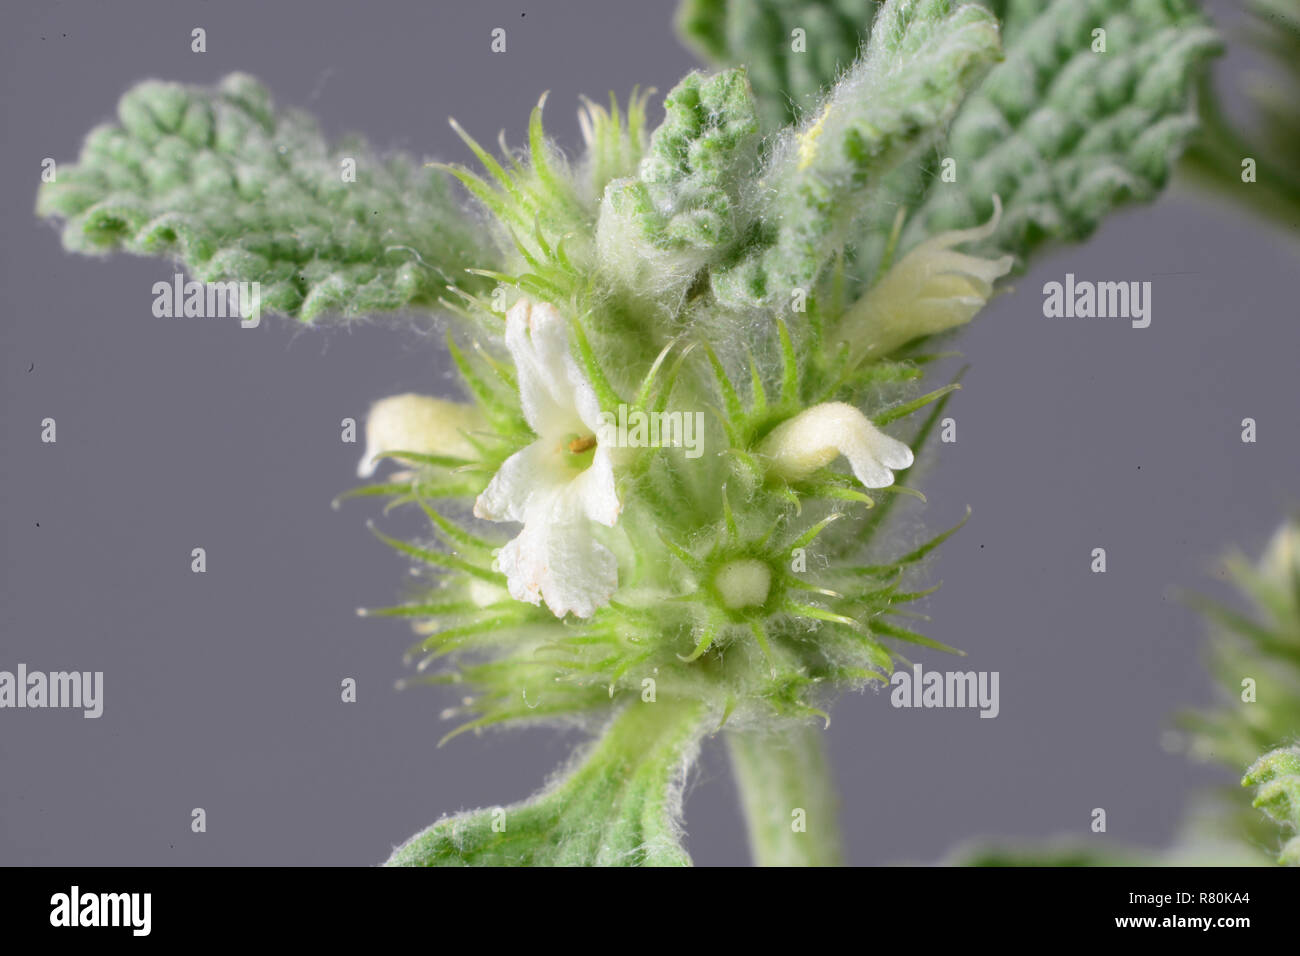 Ballote Ballote commun, Blanc (Marrubium vulgare). Tige avec feuilles et fleurs. Studio photo. Allemagne Banque D'Images